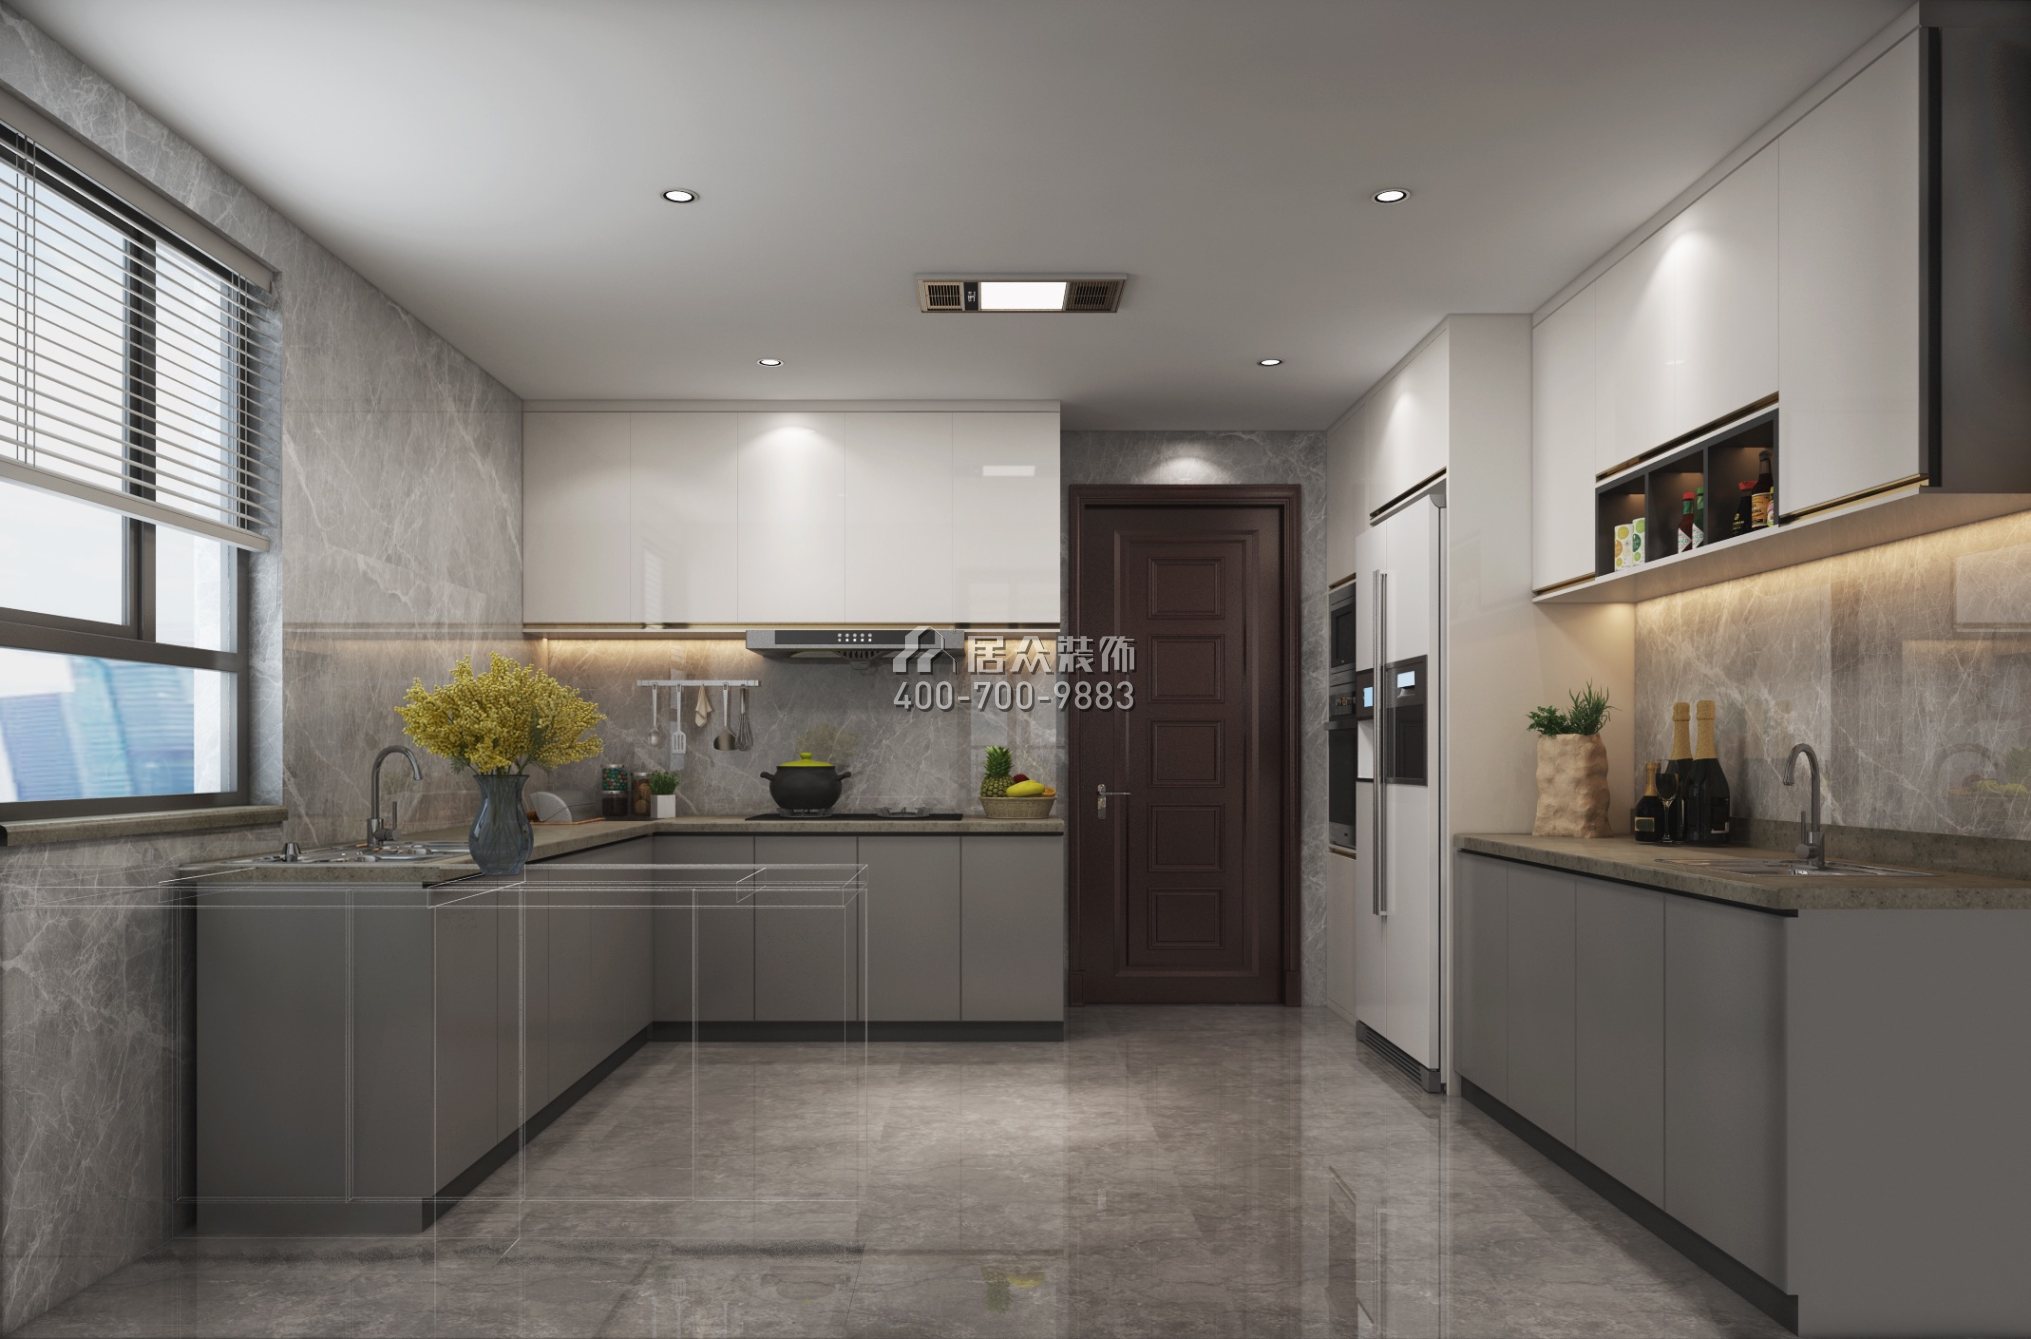 水湾壹玖柒玖广场一期169平方米现代简约风格平层户型厨房装修效果图